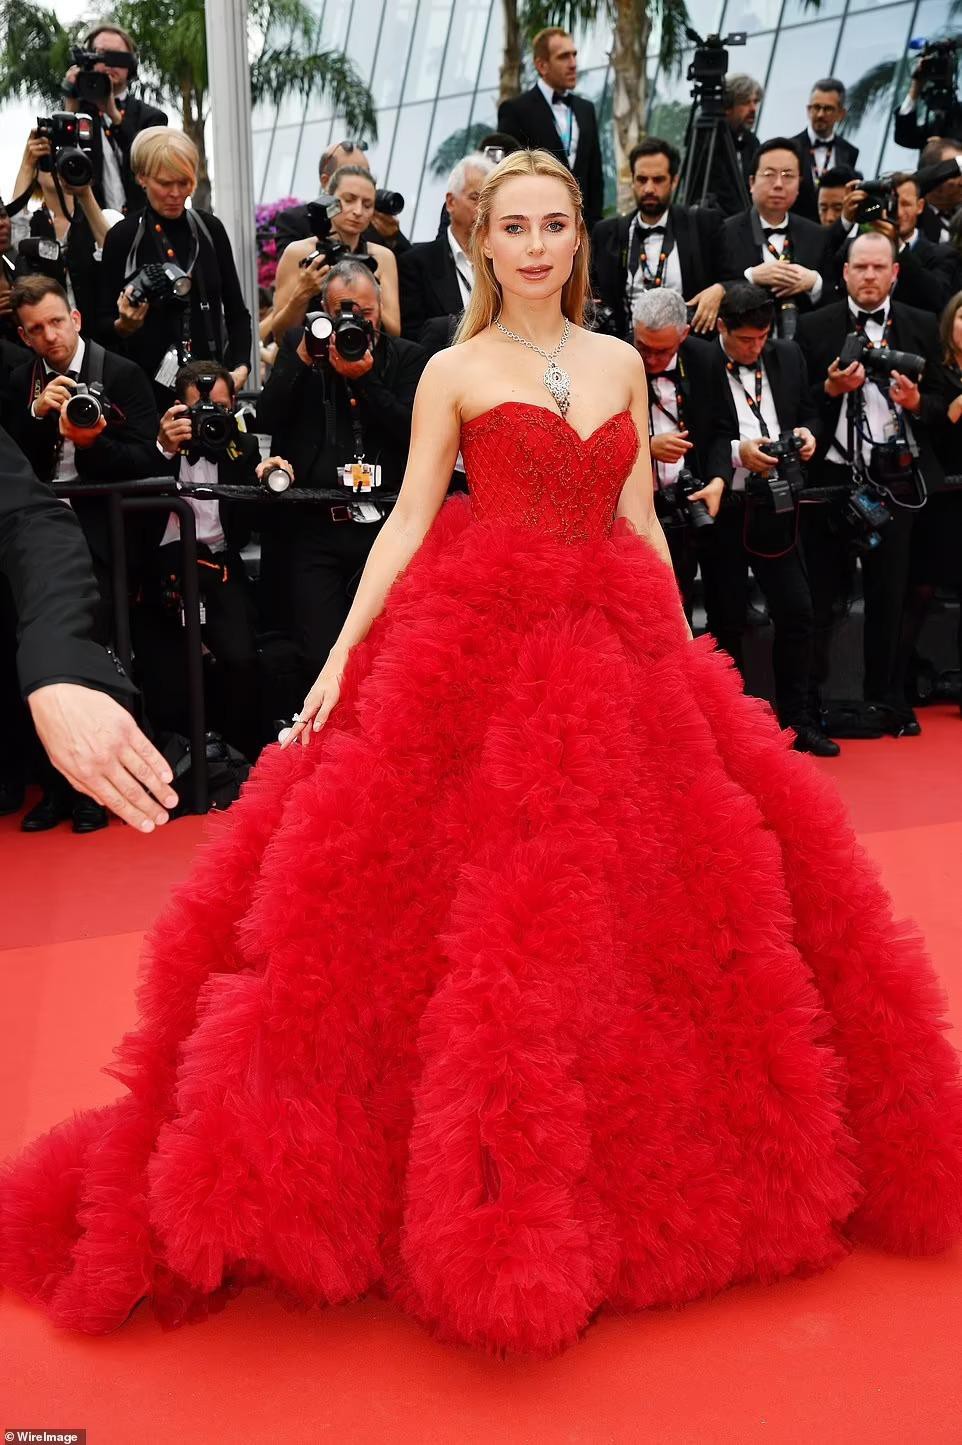 Cannes ngày 6: Sharon Stone cởi váy trên thảm đỏ, hai người đẹp gặp sự cố 'lộ hàng' kém duyên - Ảnh 10.